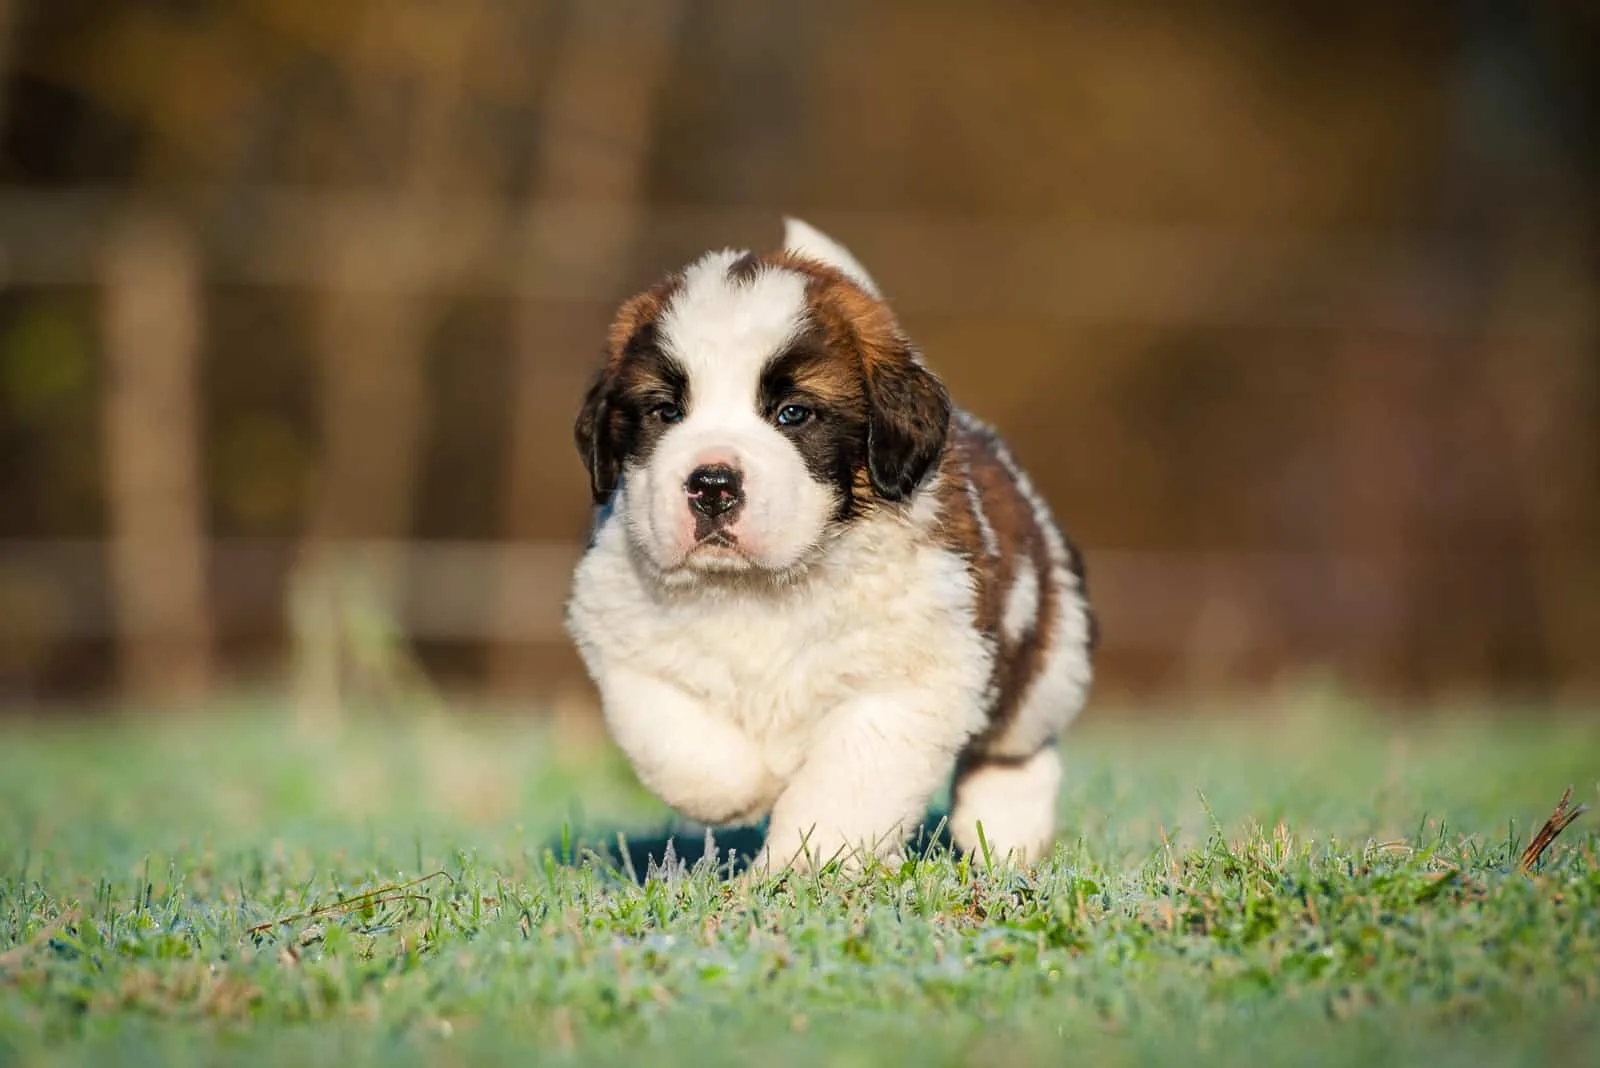 Saint Bernard puppy walking on grass